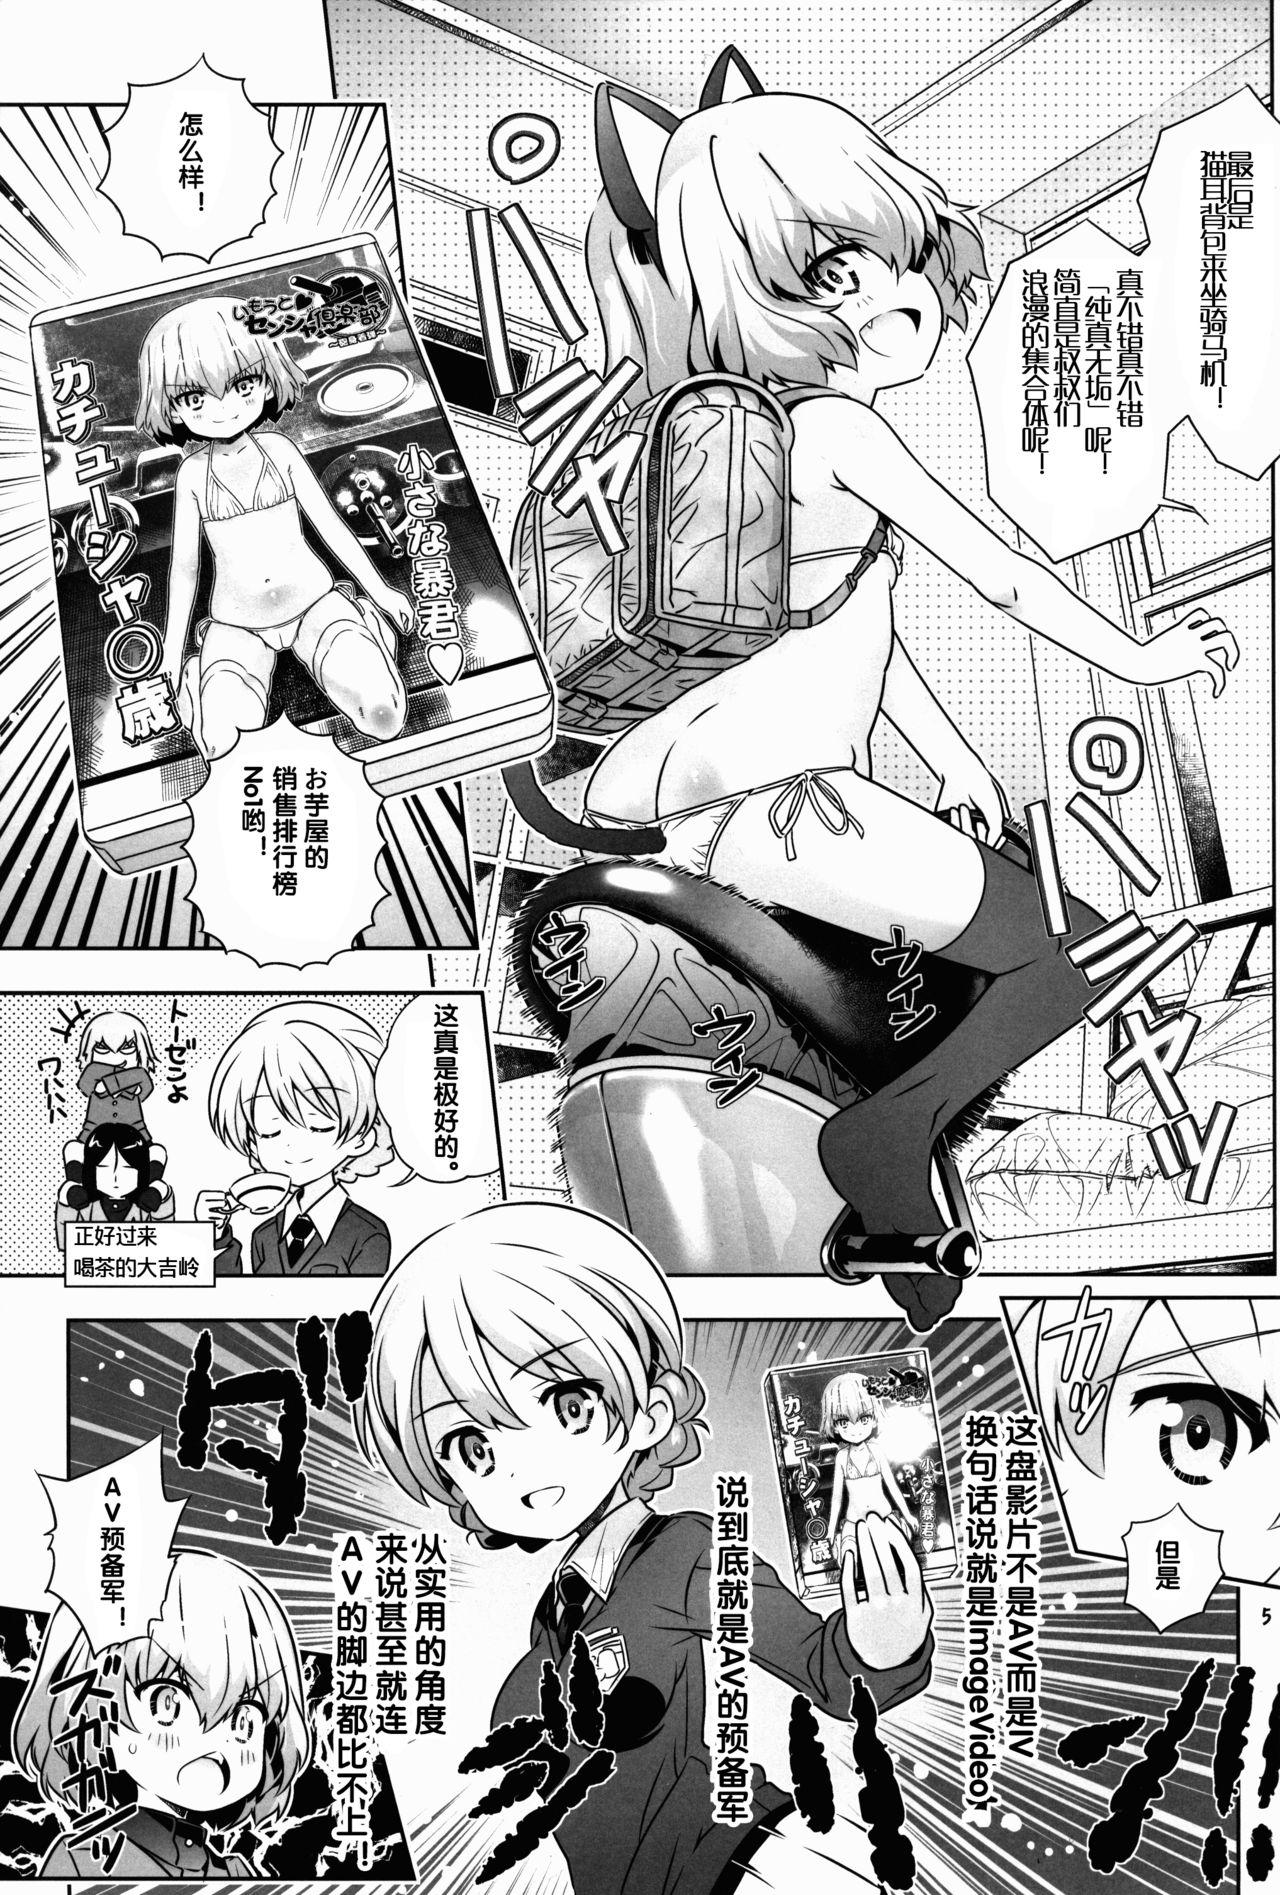 Cumming "AV Shutsuen, Ganbarimasu!?" Tsugi wa Enkou desu!! - Girls und panzer Teen Hardcore - Page 5